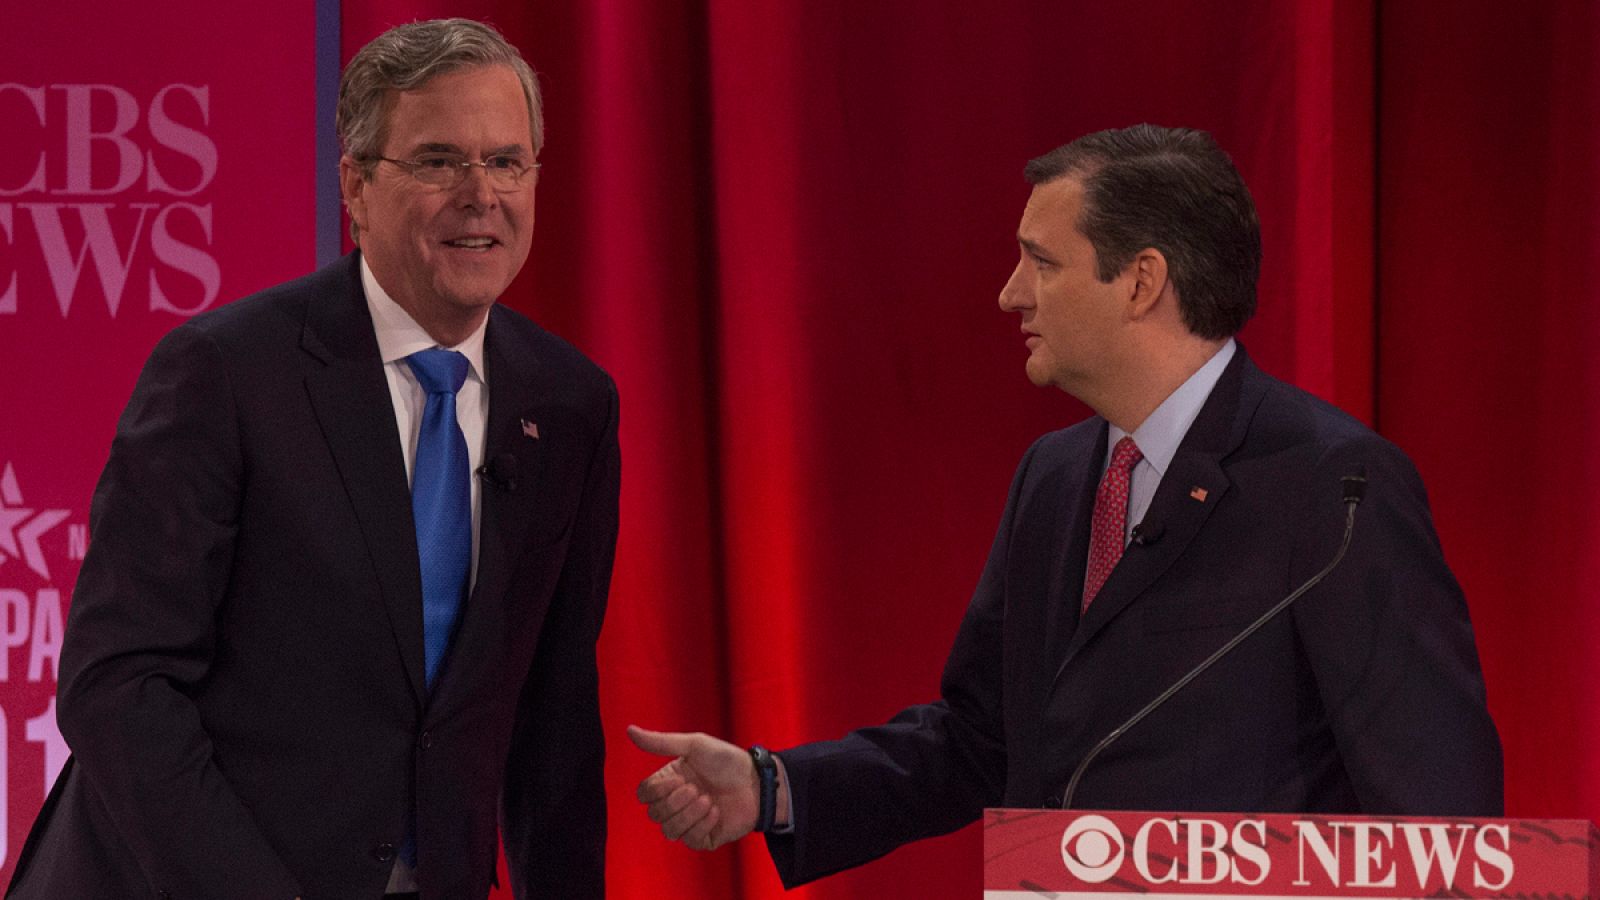 Imagen del pasado mes de febrero en la que aparece Jeb Bush (I) junto a Ted Cruz.